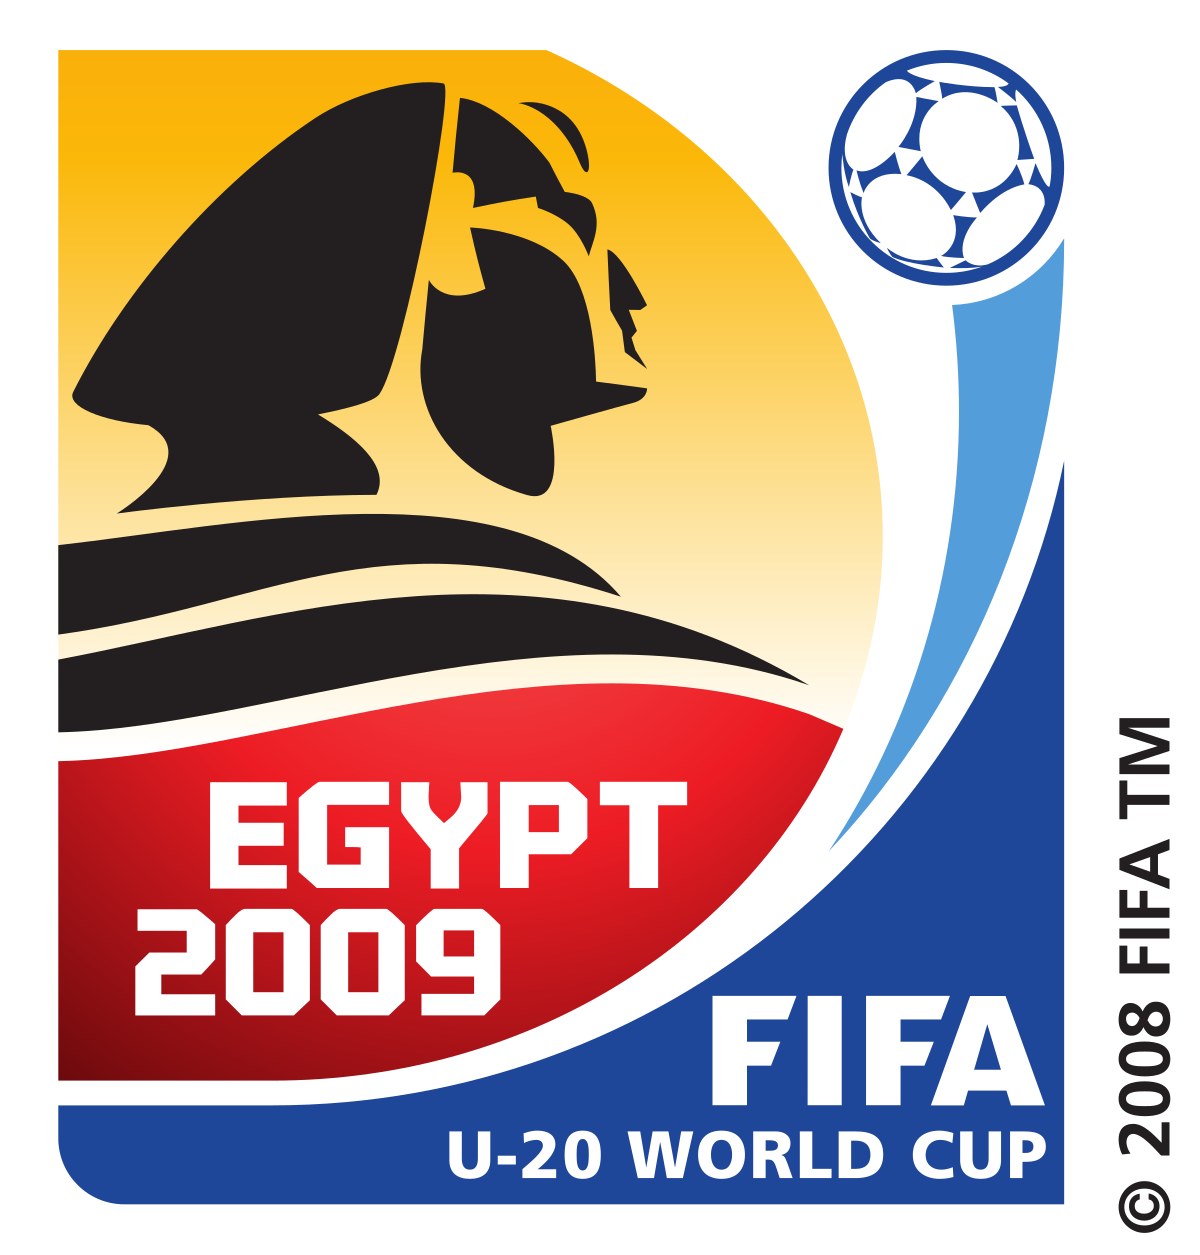 https://upload.wikimedia.org/wikipedia/en/thumb/b/bd/2009_FIFA_U-20_World_Cup.svg/1200px-2009_FIFA_U-20_World_Cup.svg.png